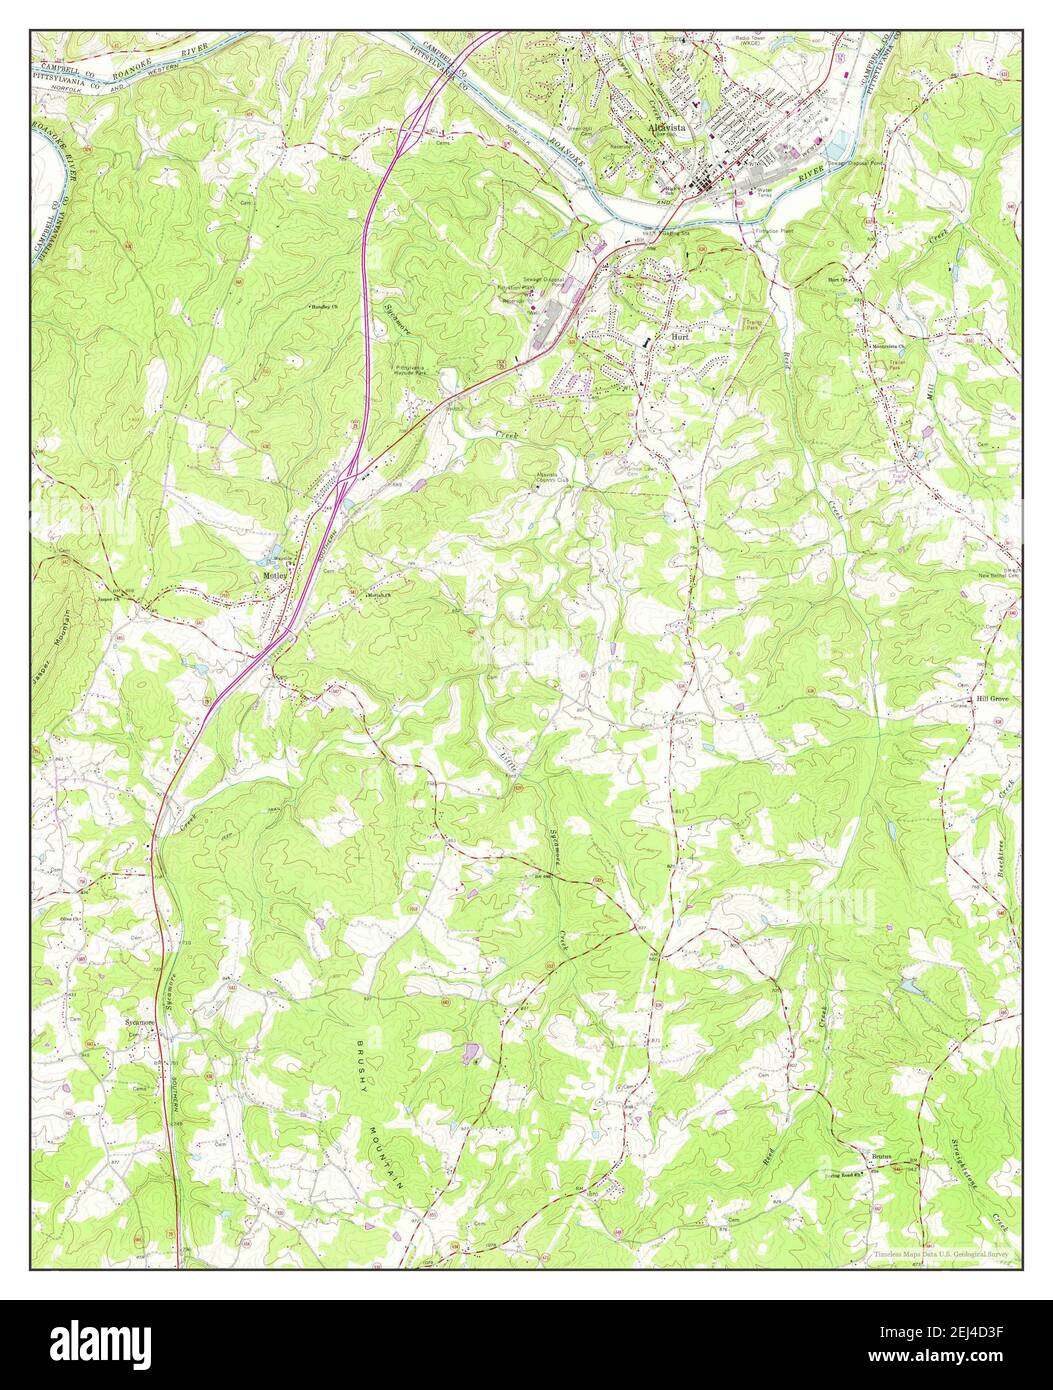 Altavista, Virginia, Karte 1966, 1:24000, Vereinigte Staaten von Amerika von Timeless Maps, Daten U.S. Geological Survey Stockfoto